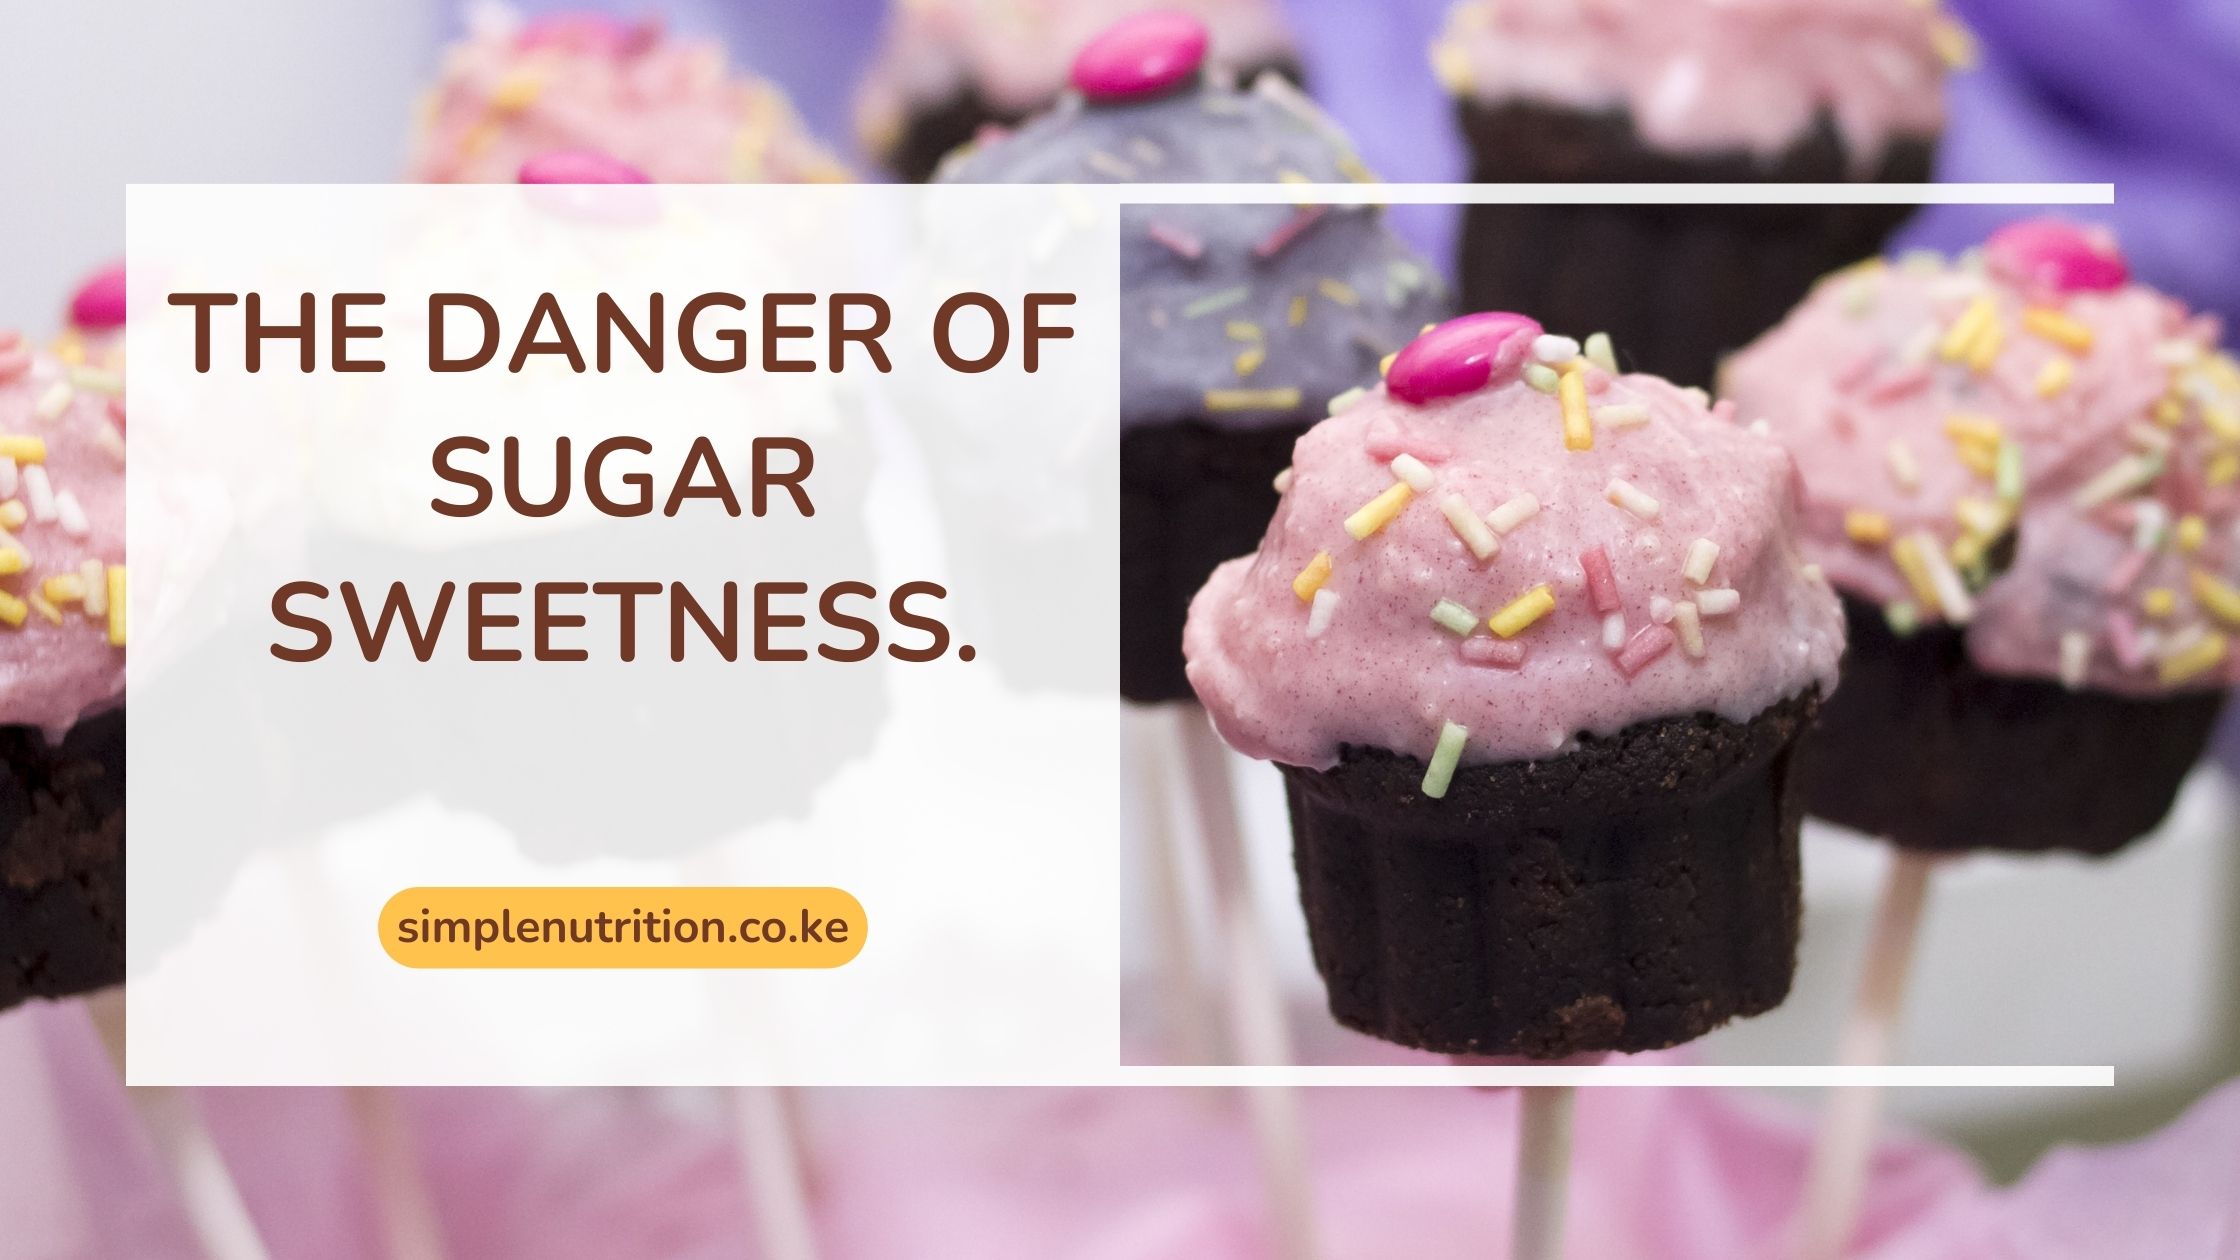 The danger of sugar sweetness.